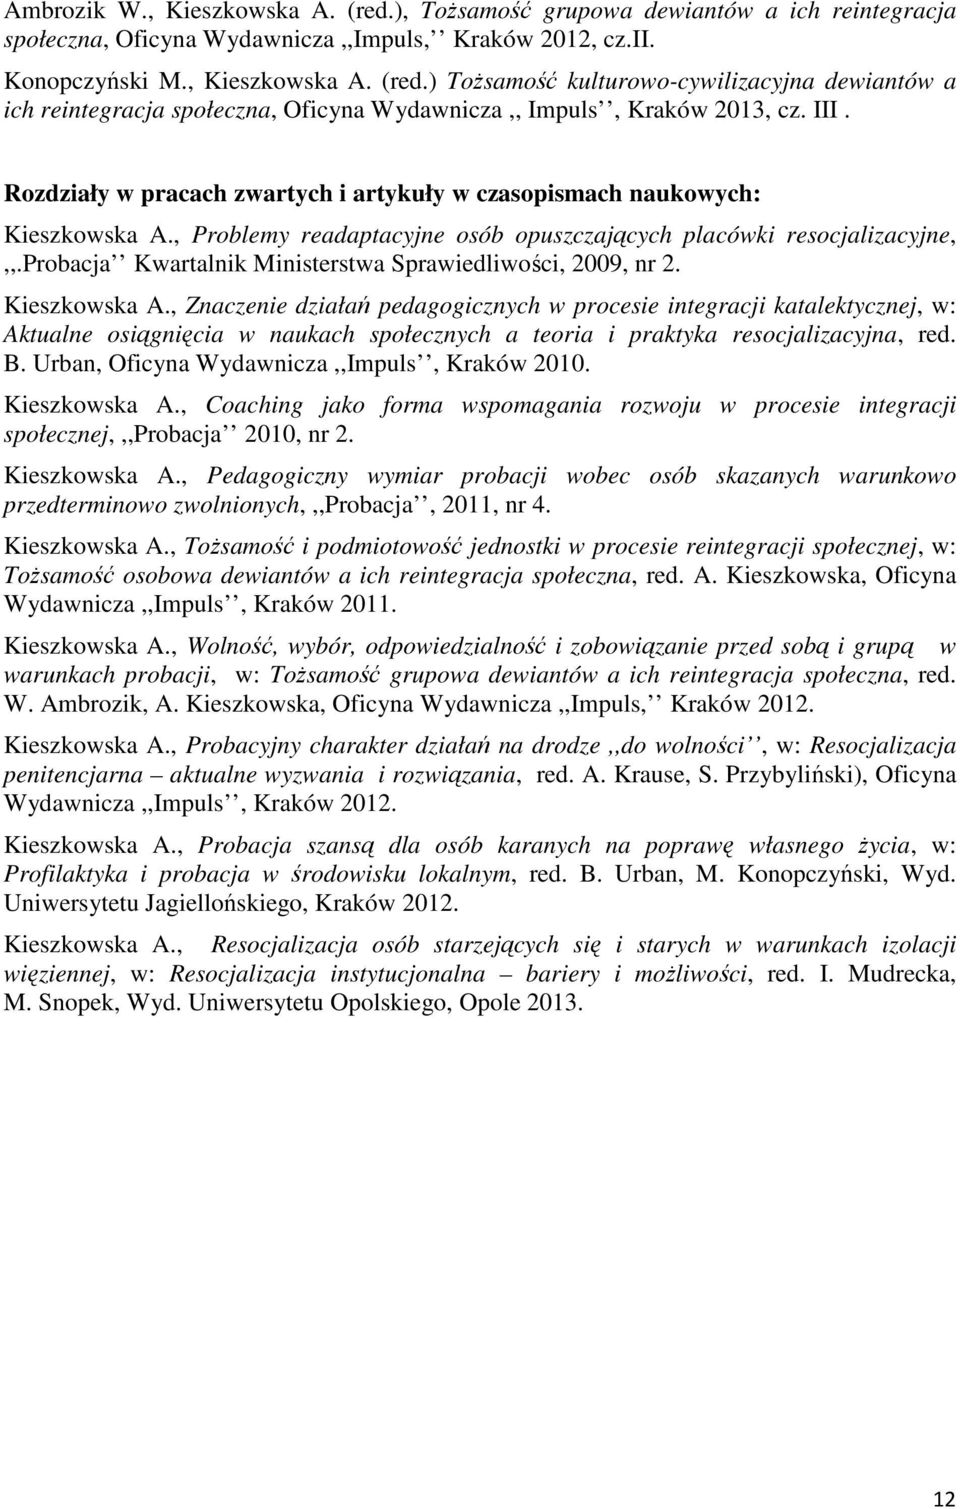 probacja Kwartalnik Ministerstwa Sprawiedliwości, 2009, nr 2. Kieszkowska A.